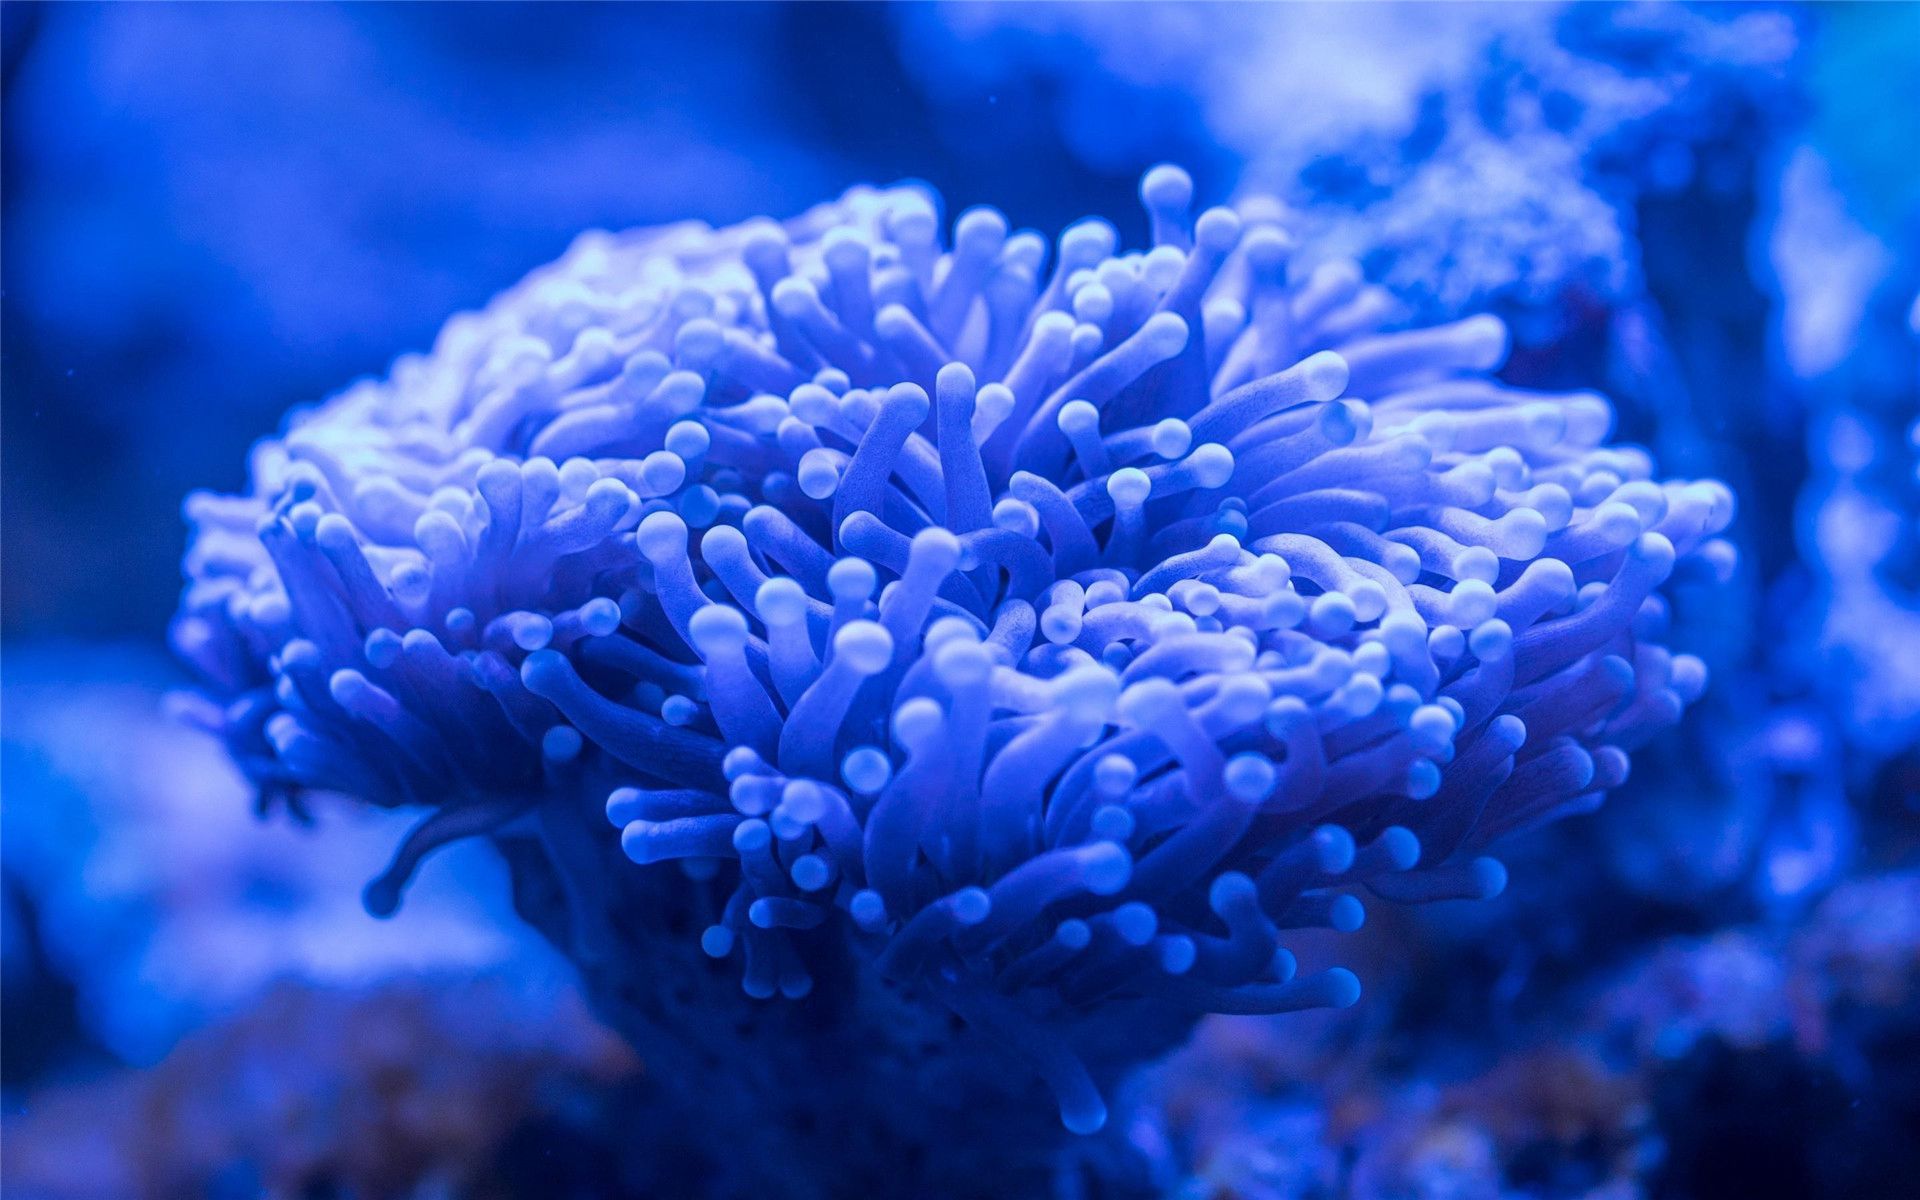 海底的世界，蔚蓝色的海底水下绝美<span style='color:red;'>珊瑚</span>，鱼儿，贝壳等好看图片欣赏